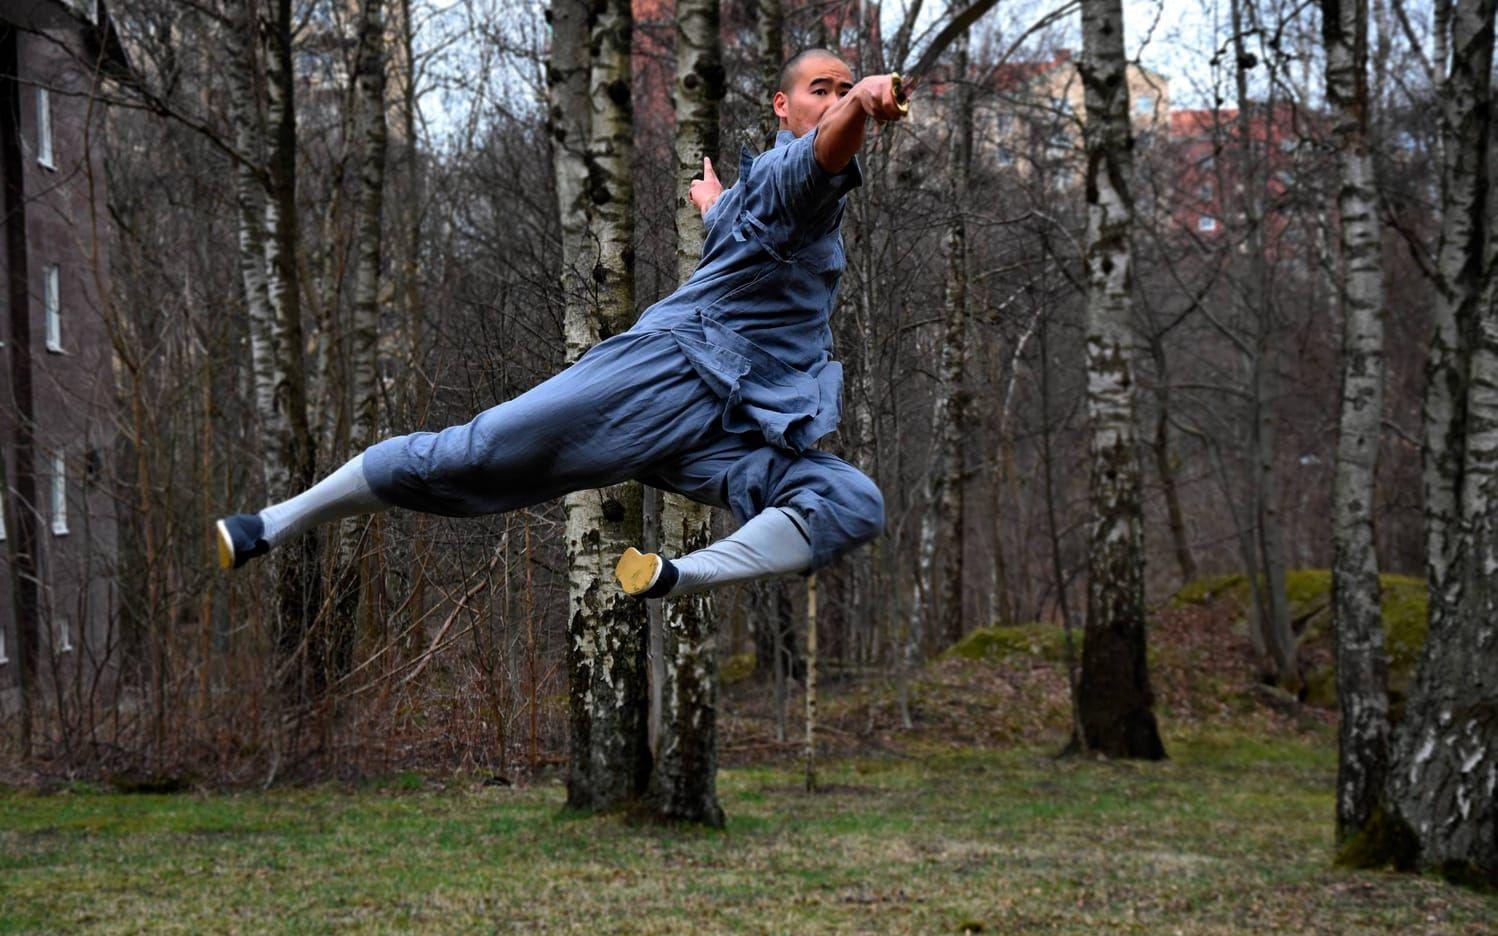 Shaojie Fan var bara 19 år när han kom till Sverige från Kina. I dag odlar han sin passion och lär ut kinesisk kampsport. Bild: Jan Larsson